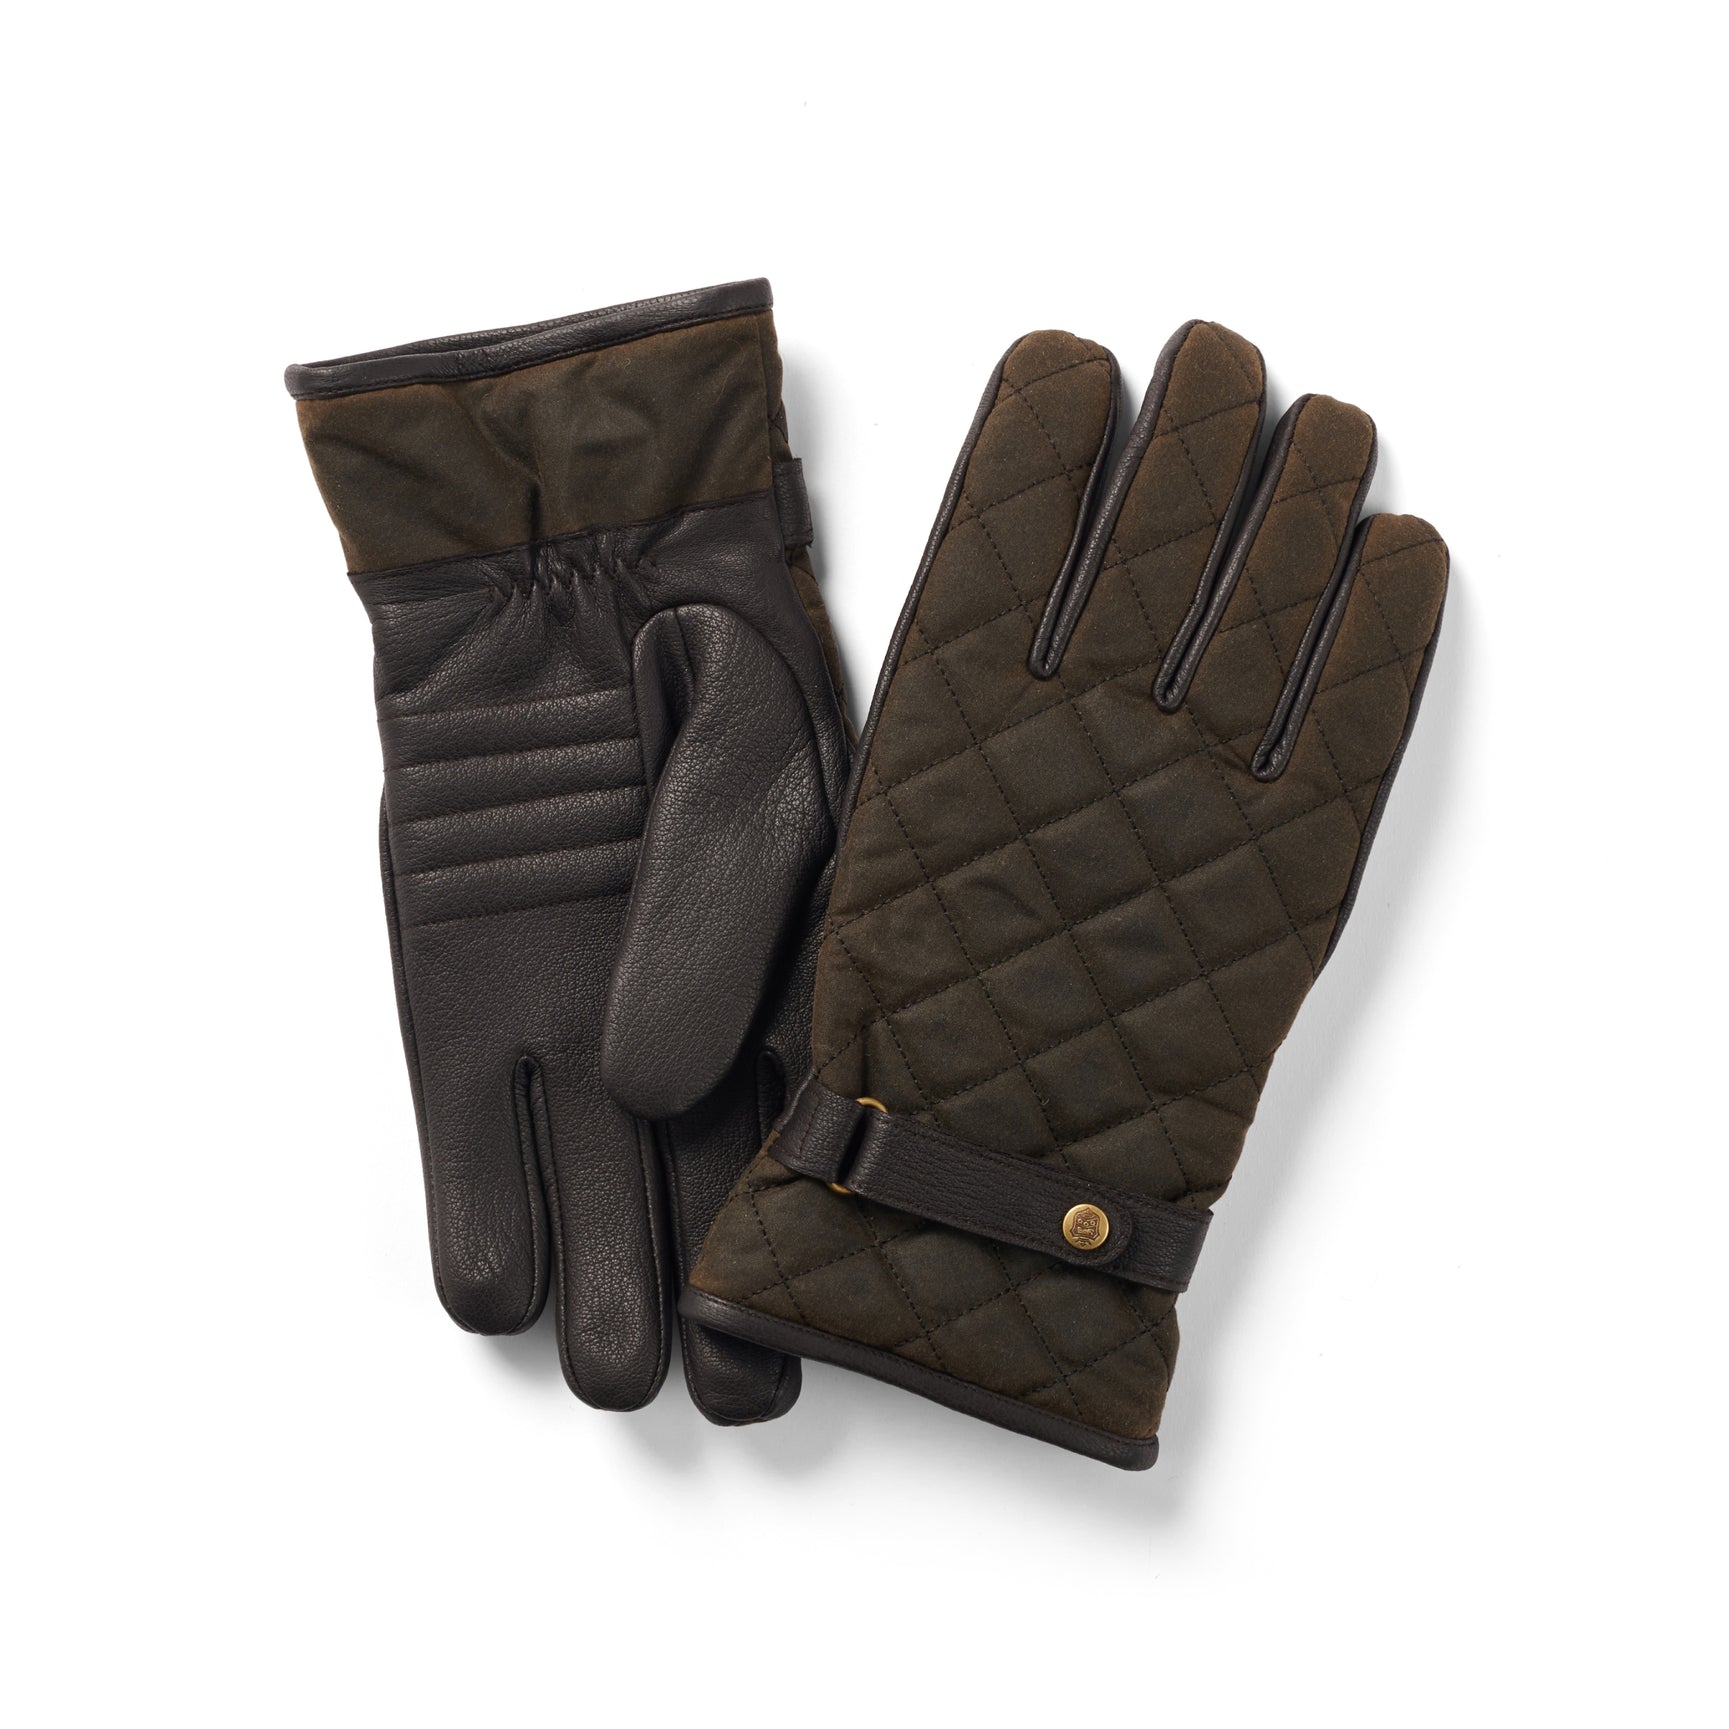 Se Handske Wax-Leather, oilskin/læder, oliven/brun - L hos Godsejeren